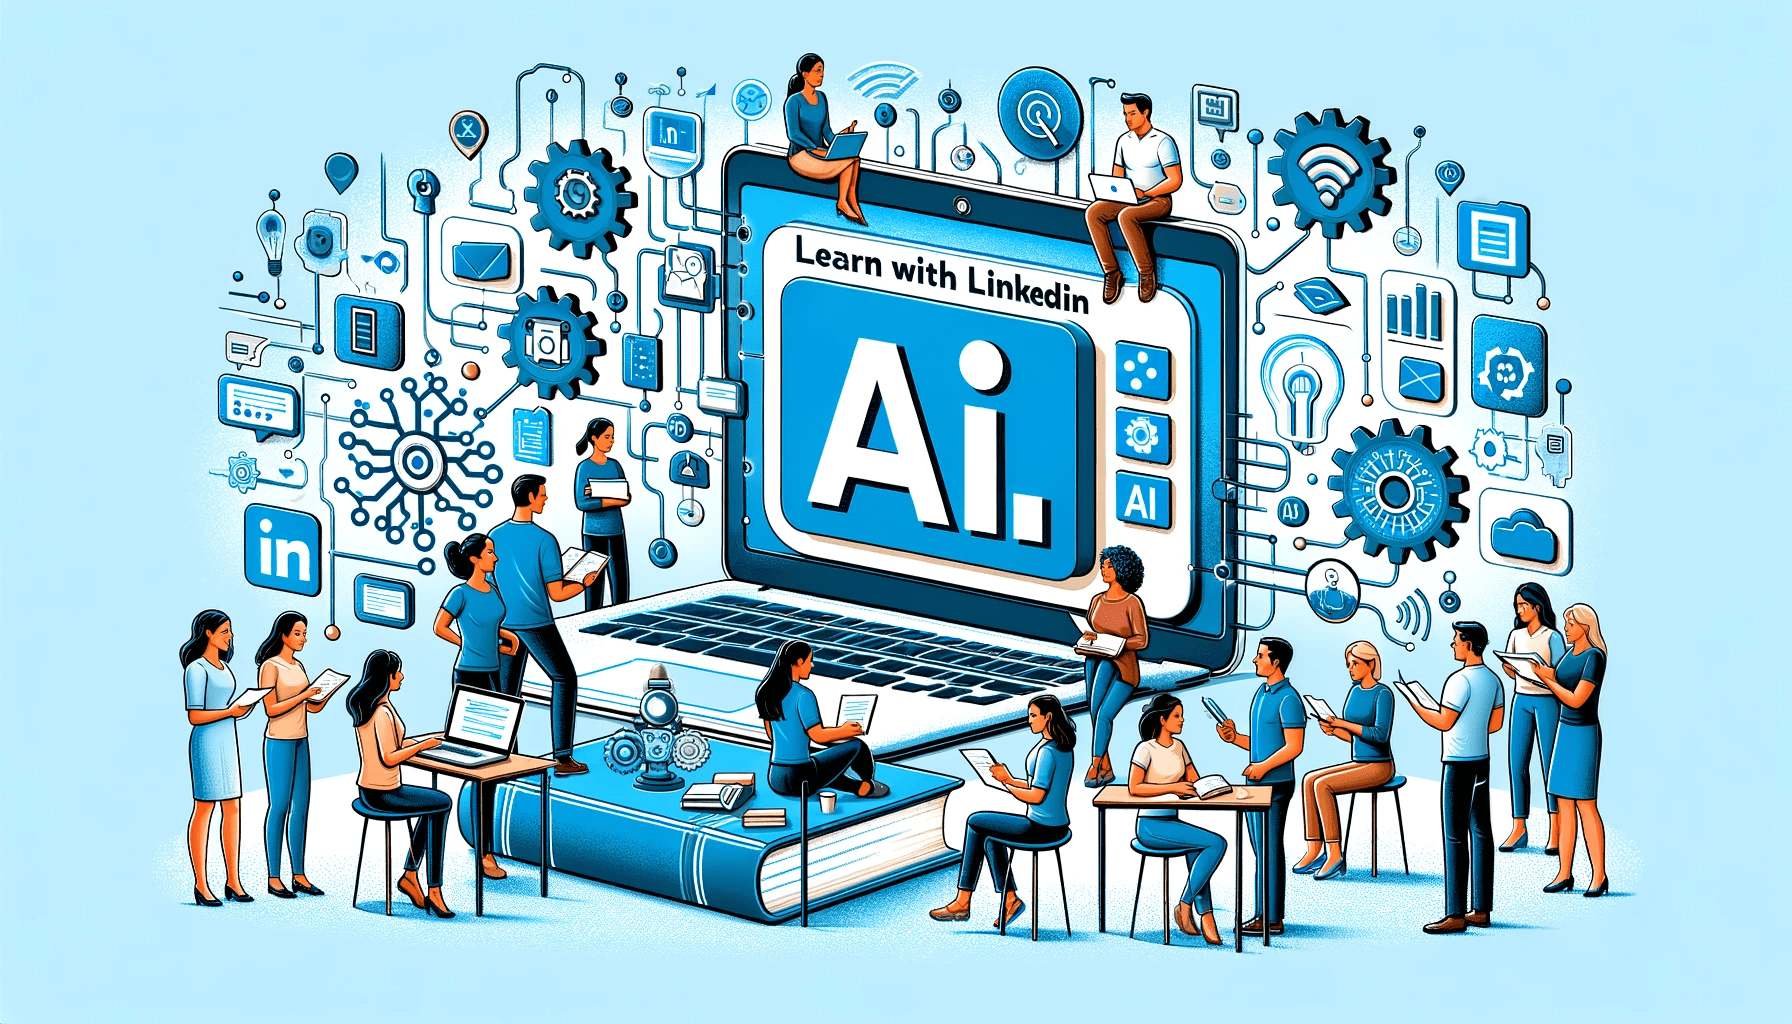 Học với LinkedIn: Các khóa học miễn phí về AI - KDnuggets